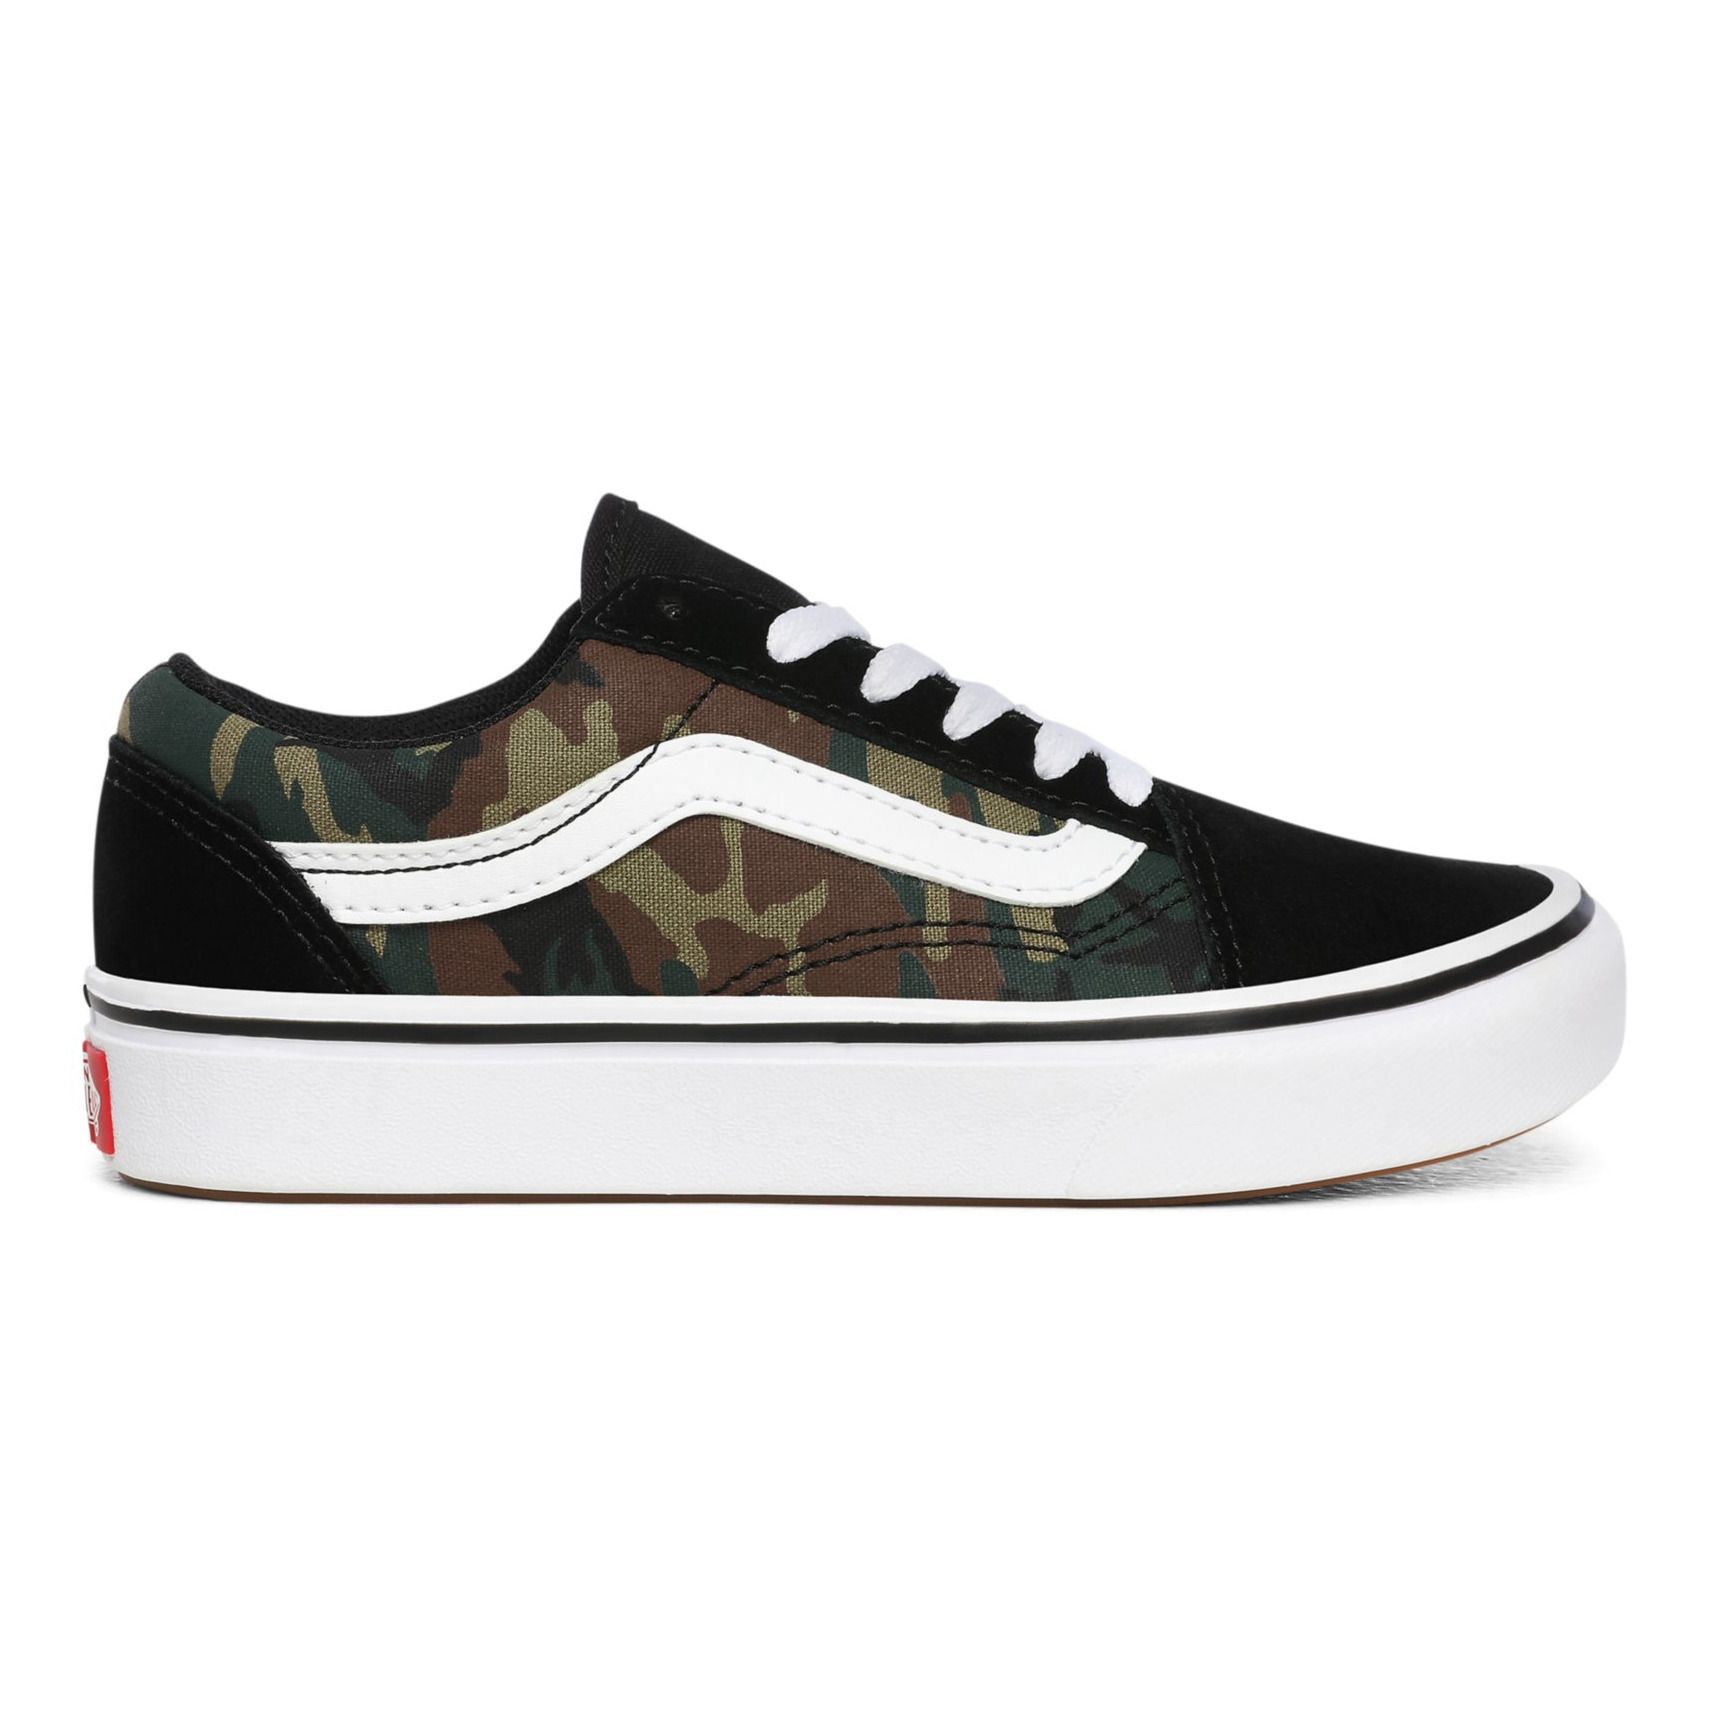 Old Skool Camouflage Sneakers Dark green Vans Shoes Teen